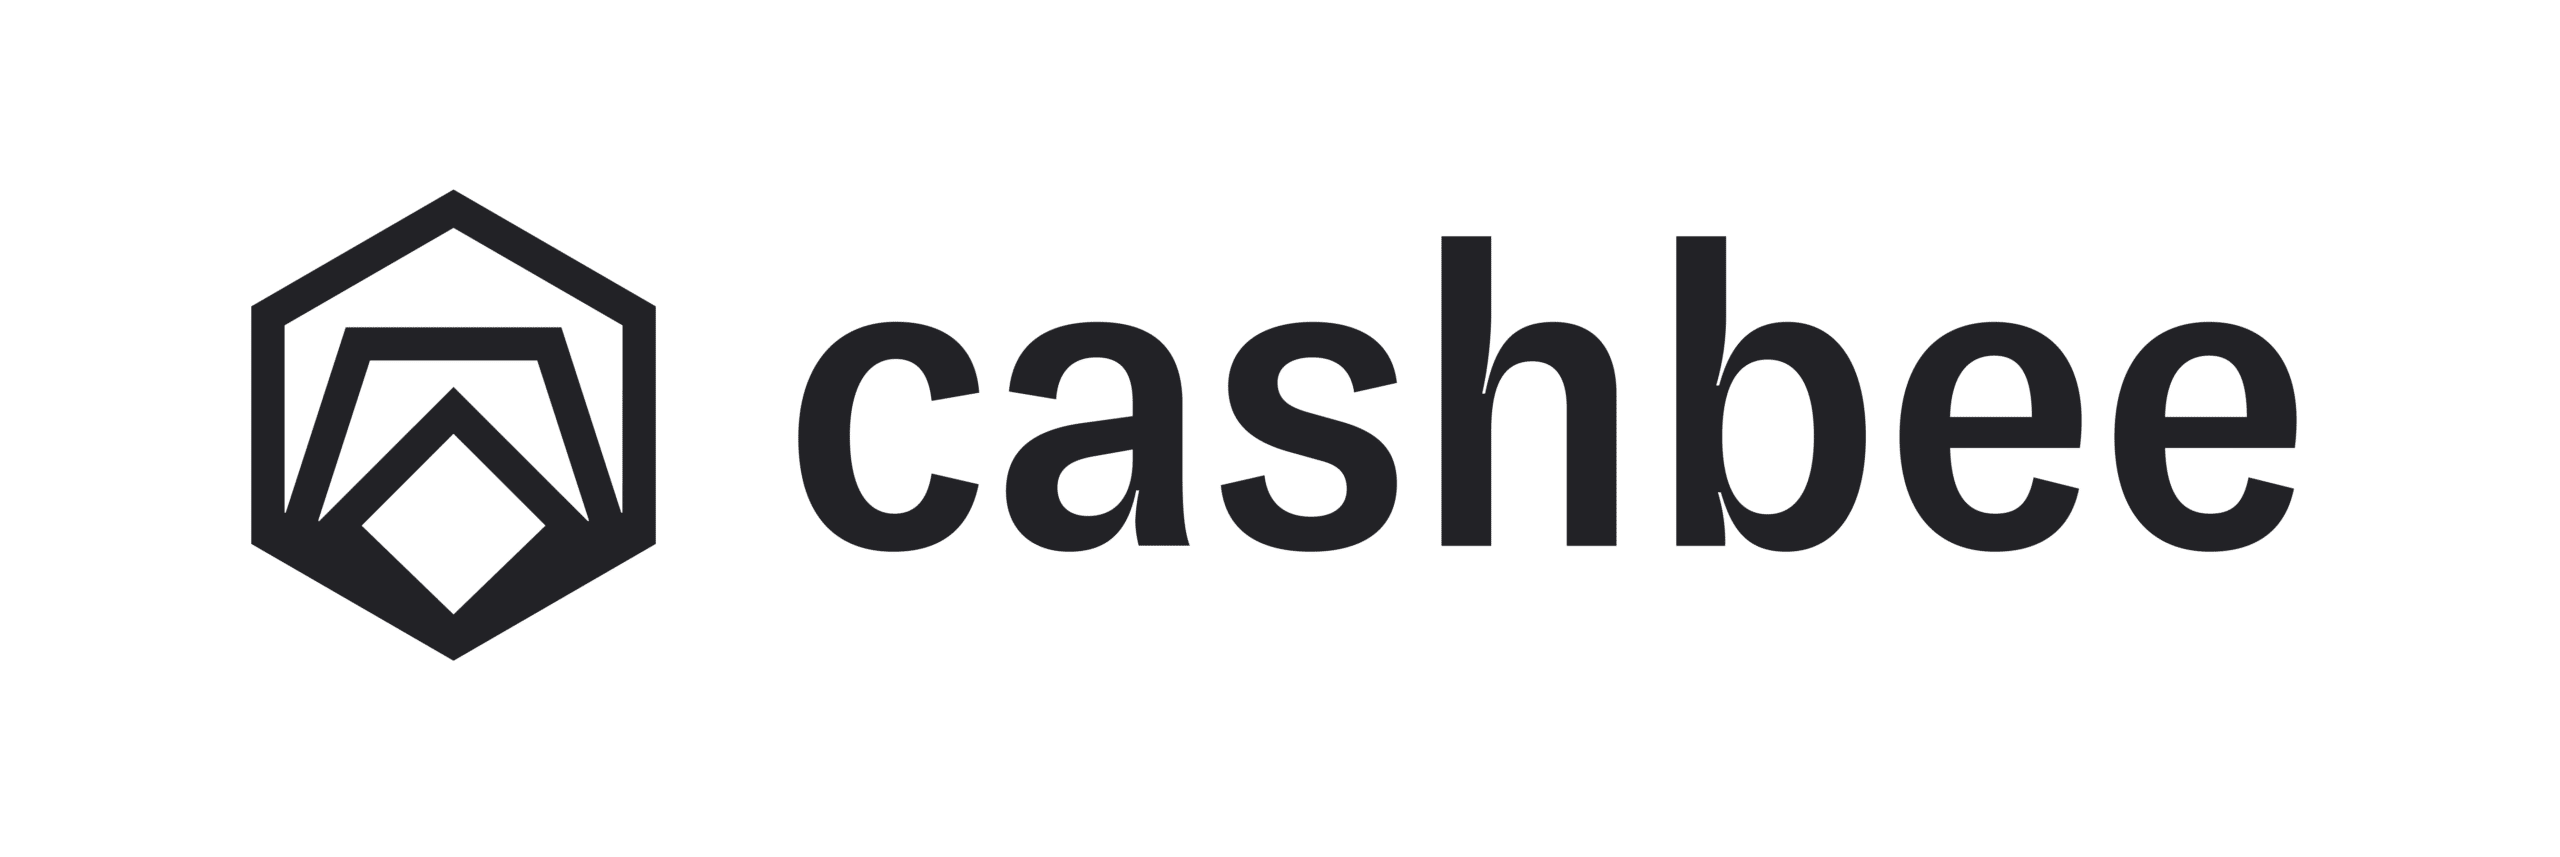 Cashbee Pro : L’épargne pour les indépendants